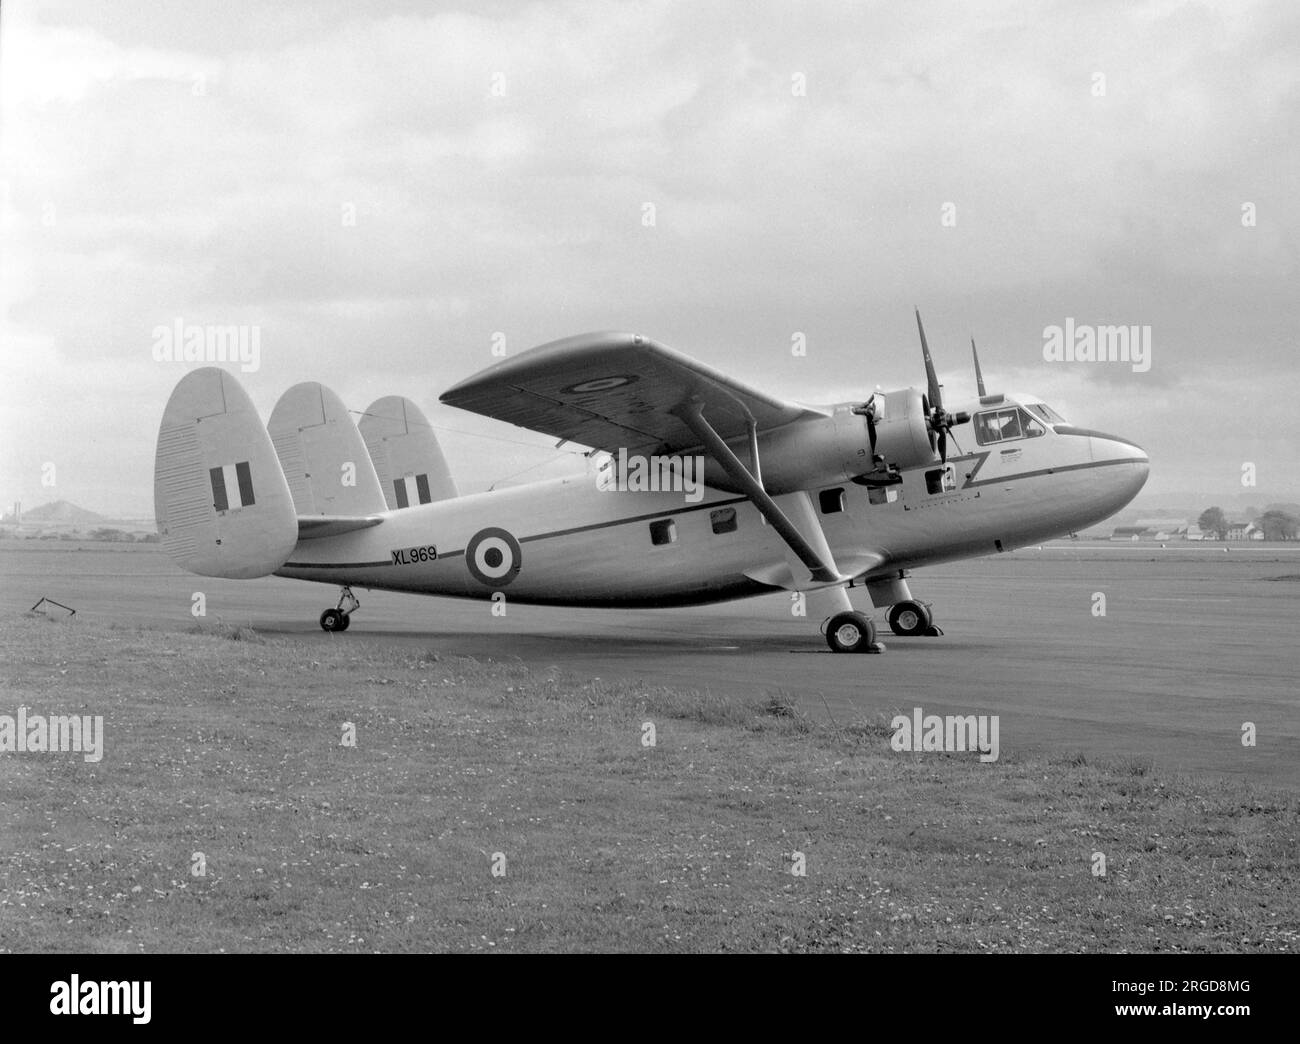 Royal Air Force - Scottish Aviation Twin Pioneer CC.1 XL969 (msn 522), il 20 maggio 1958, due giorni dopo la consegna. Foto Stock